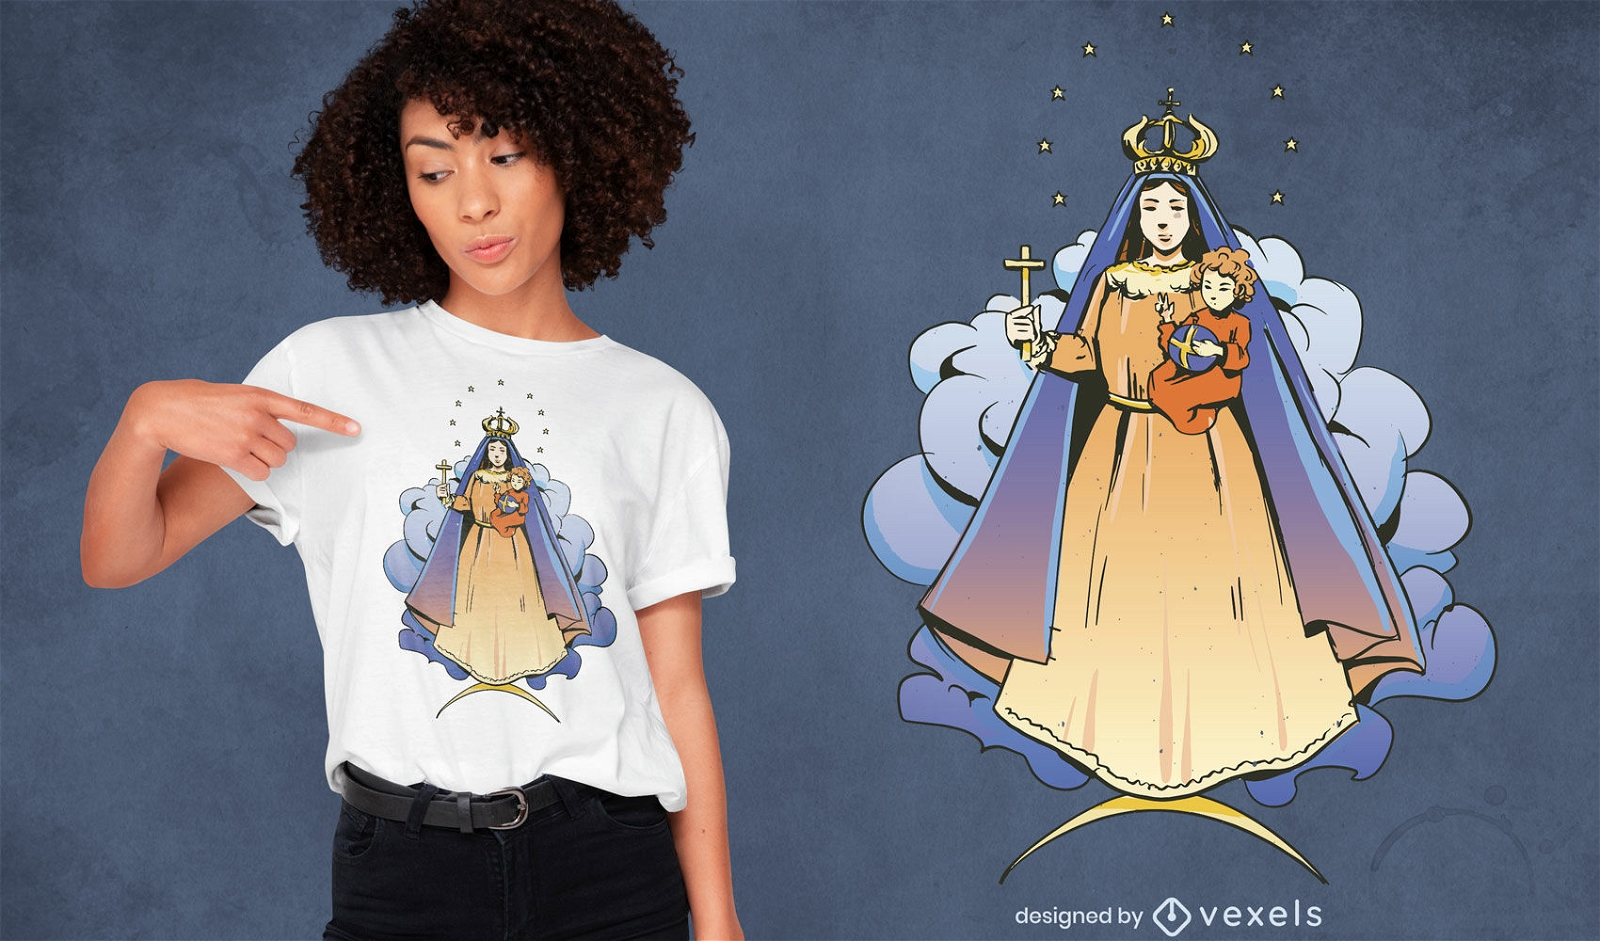 Christliches T-Shirt-Design der Jungfrau der Wohlt?tigkeitsorganisation